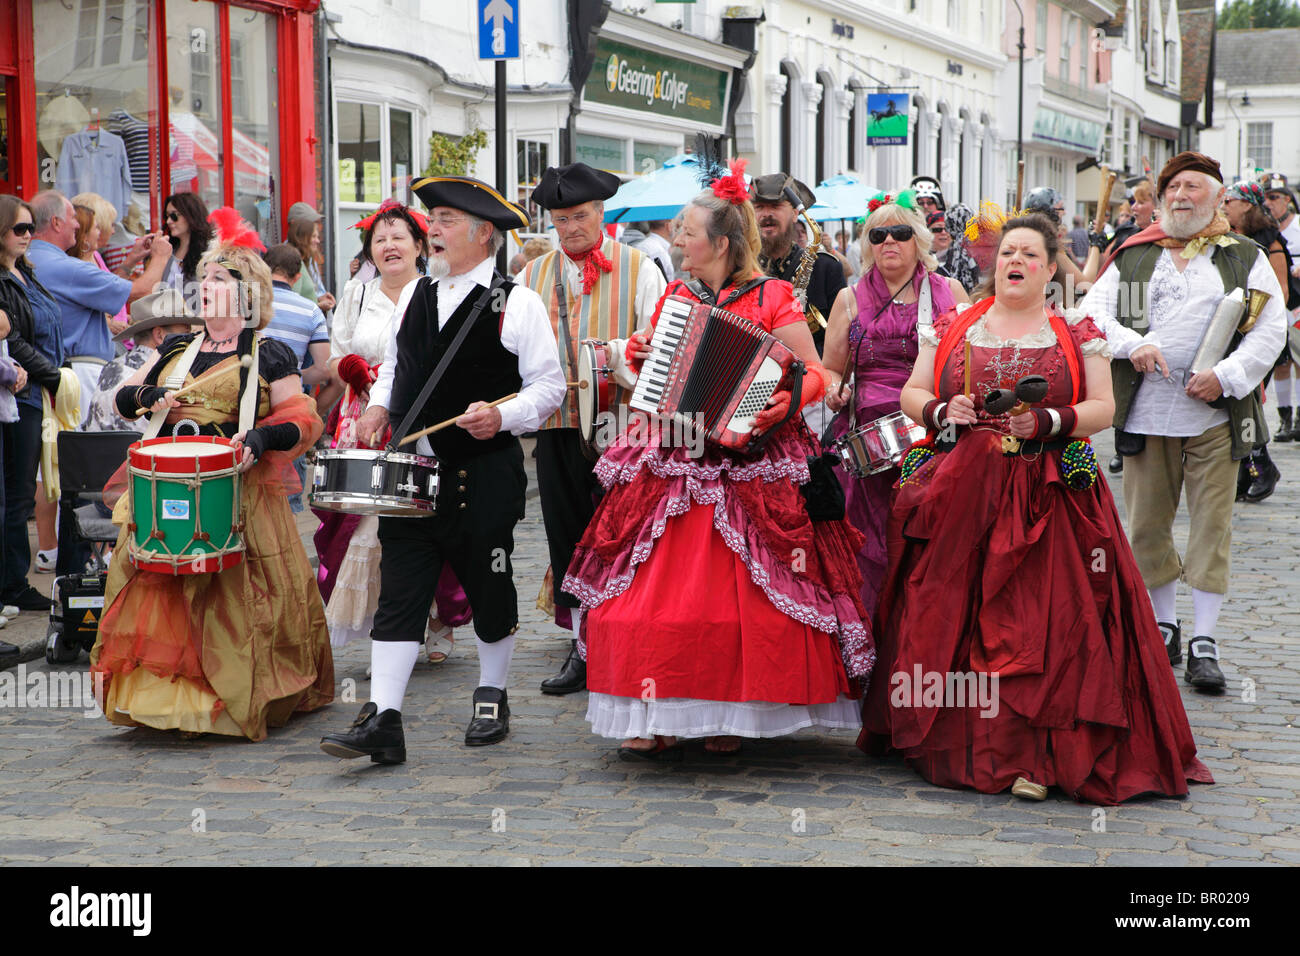 A marching band at Faversham hop festival parade Stock Photo